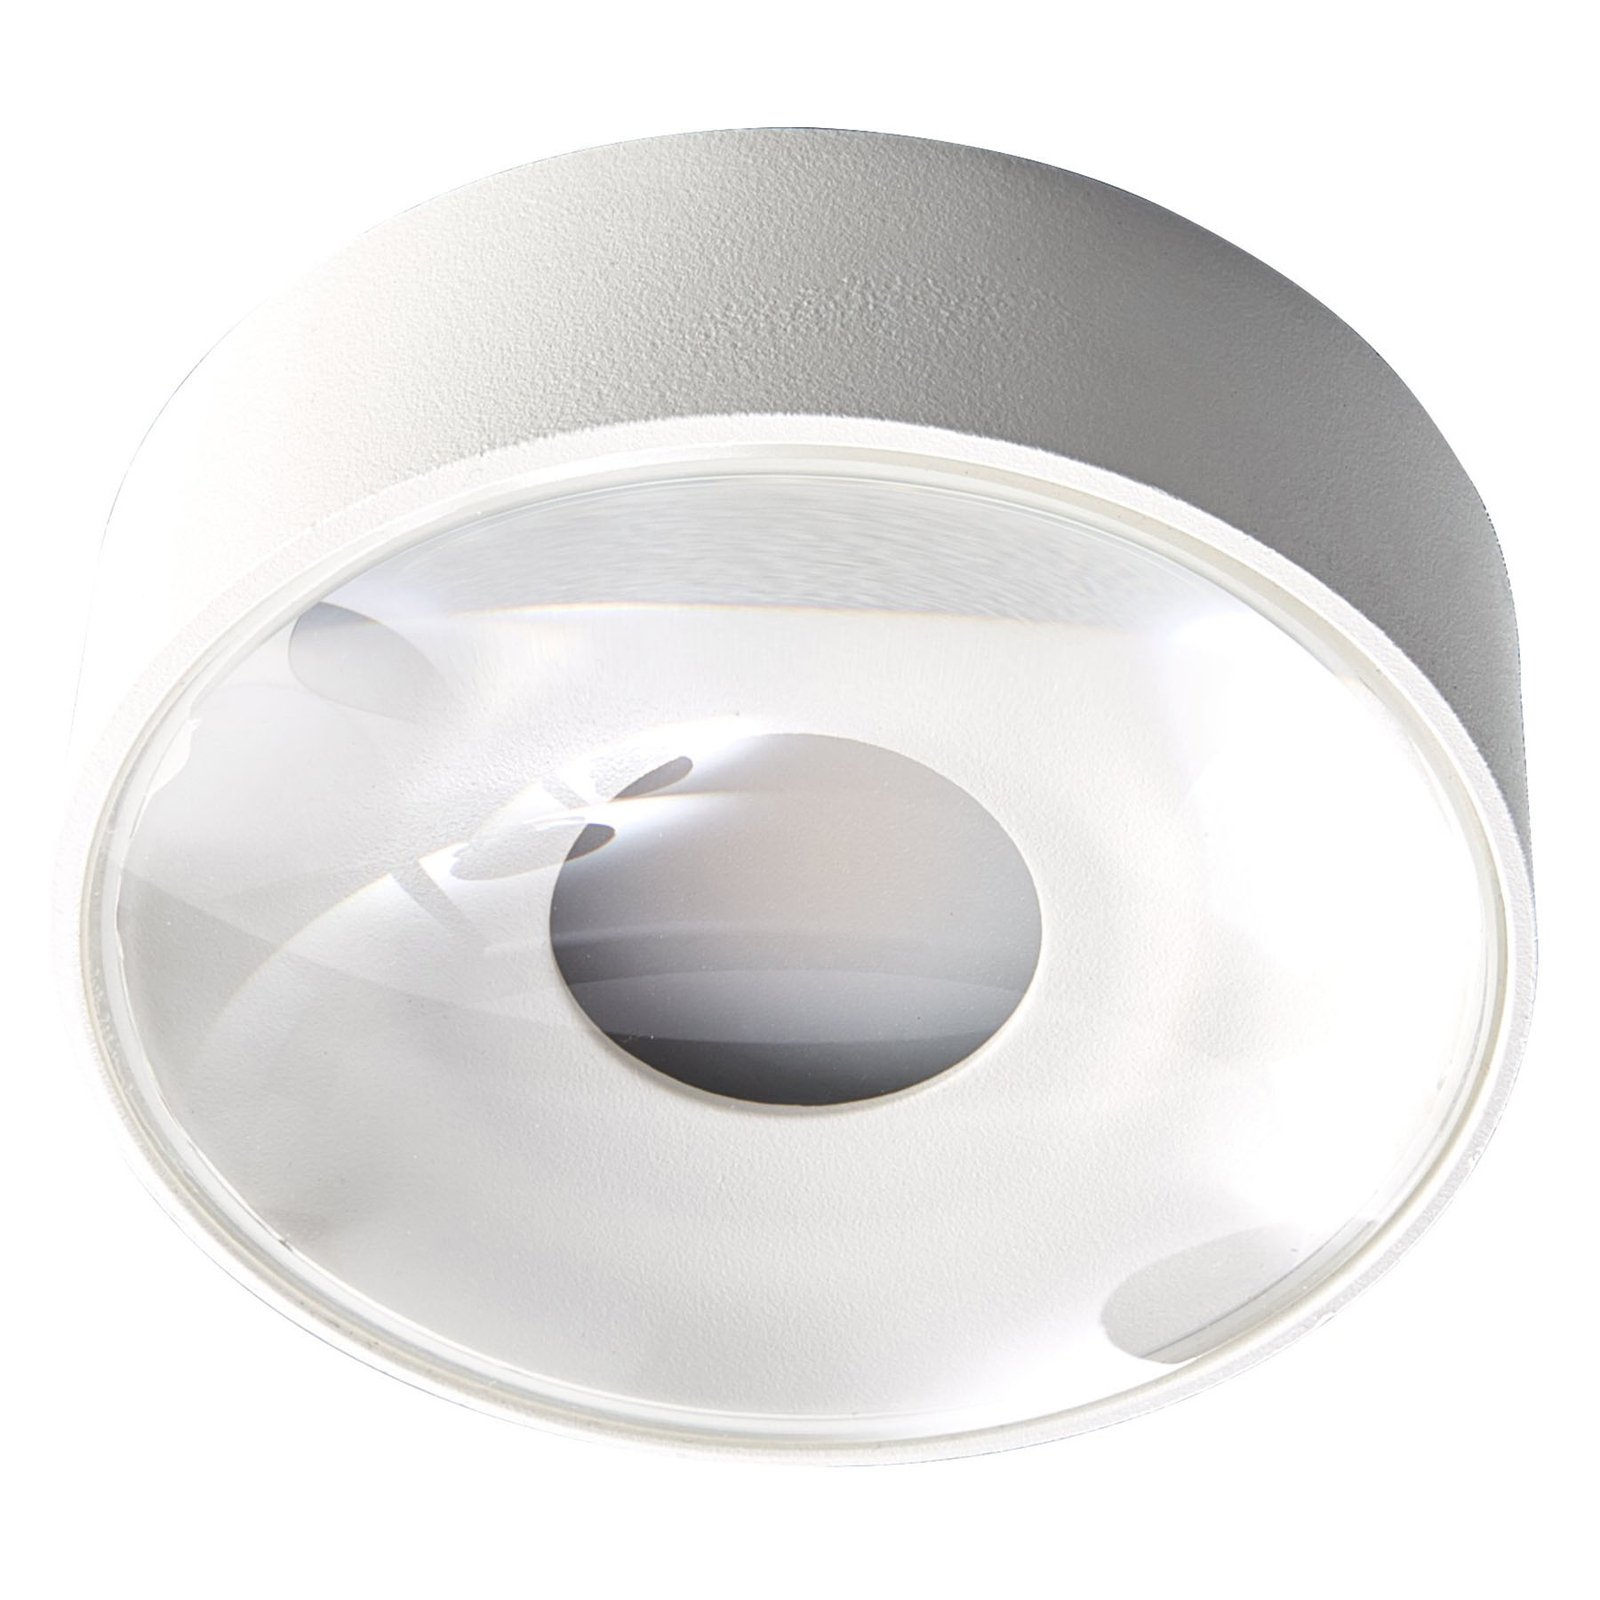 LED outdoor ceiling light Girona, white